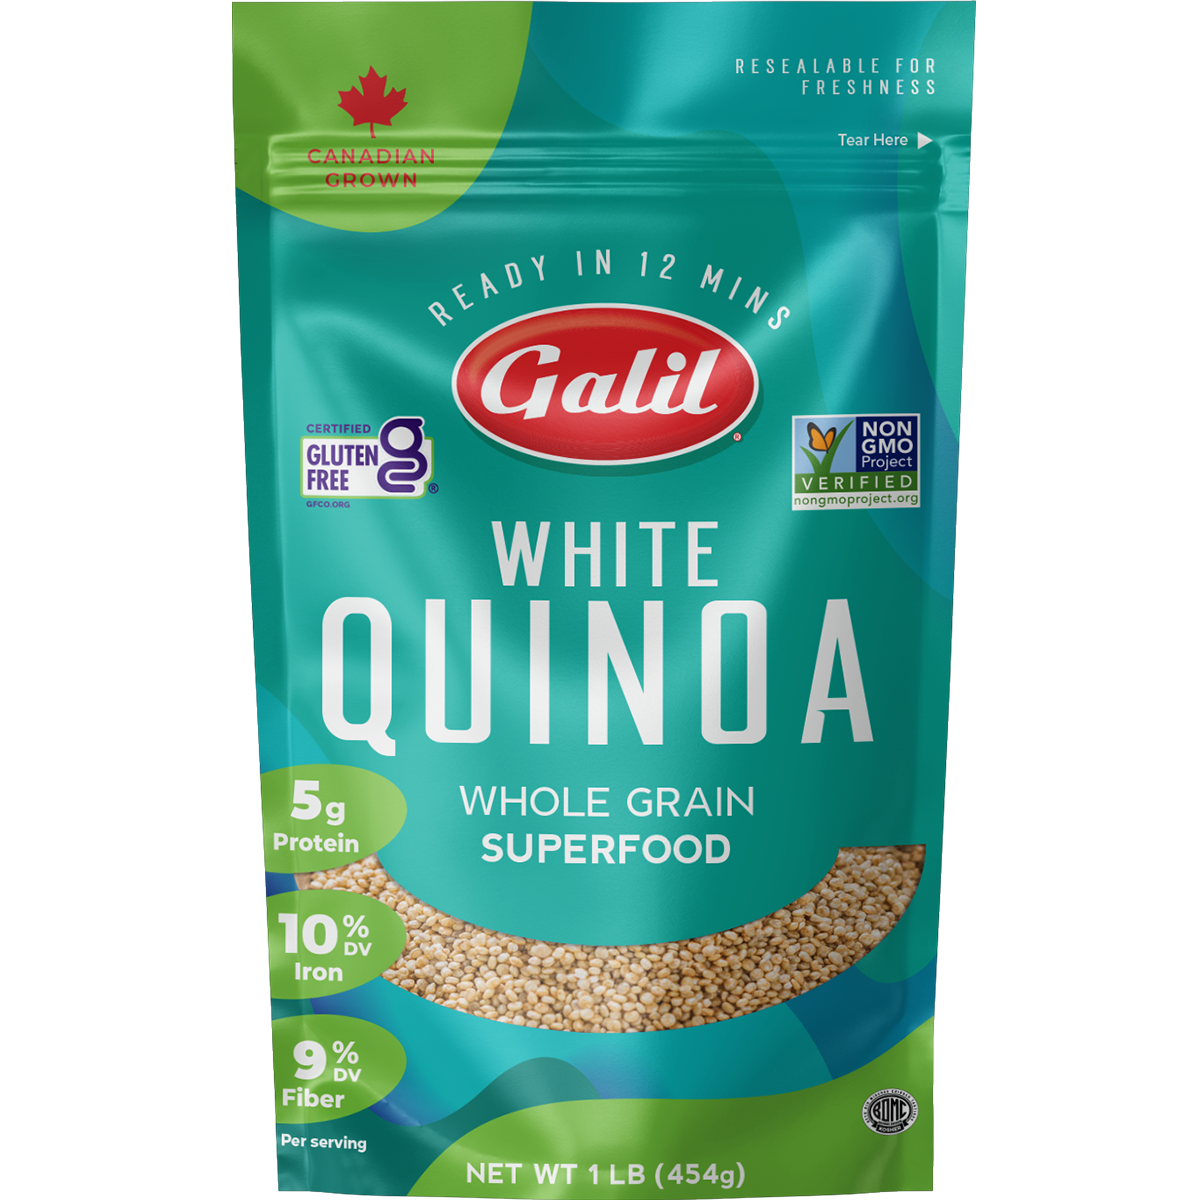 White Whole Grain Quinoa | 16 oz | Galil